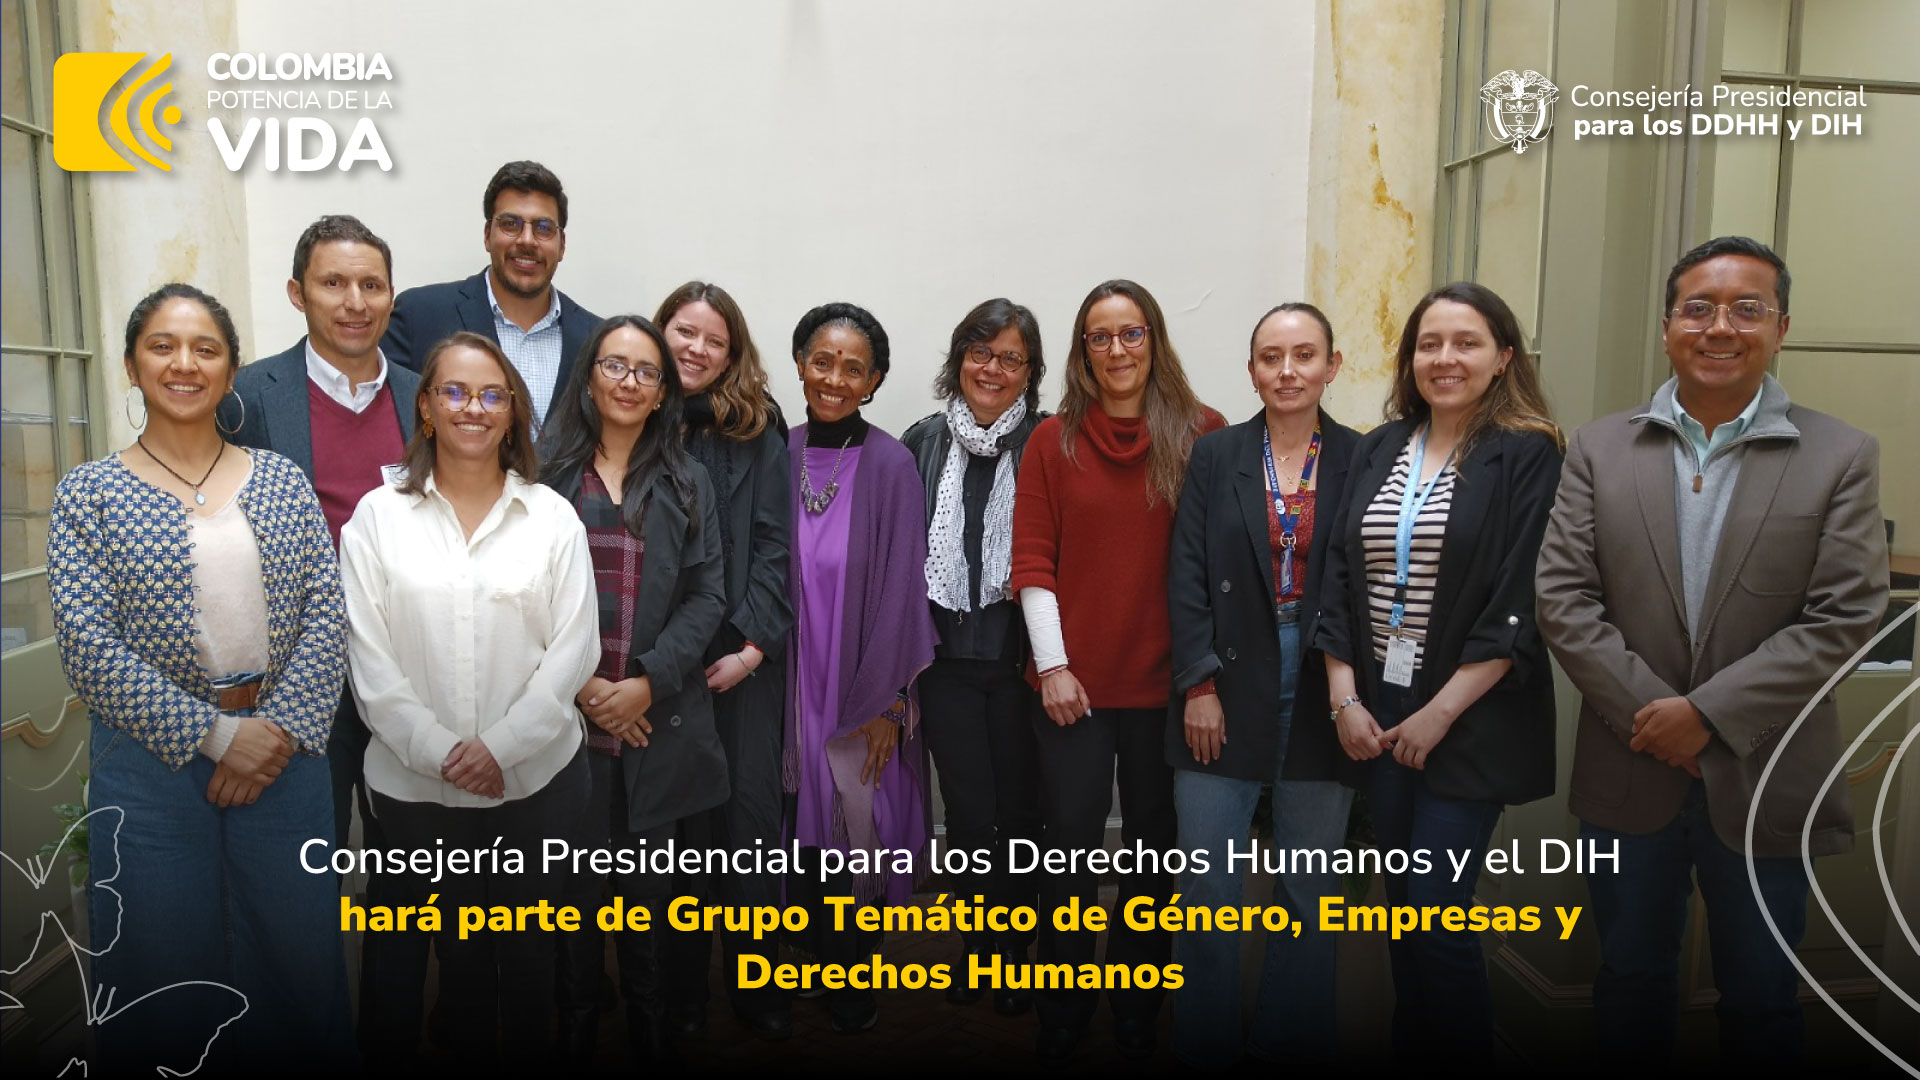 Consejería Presidencial para los Derechos Humanos y el DIH hará parte de Grupo Temático de Género, Empresas y Derechos Humanos